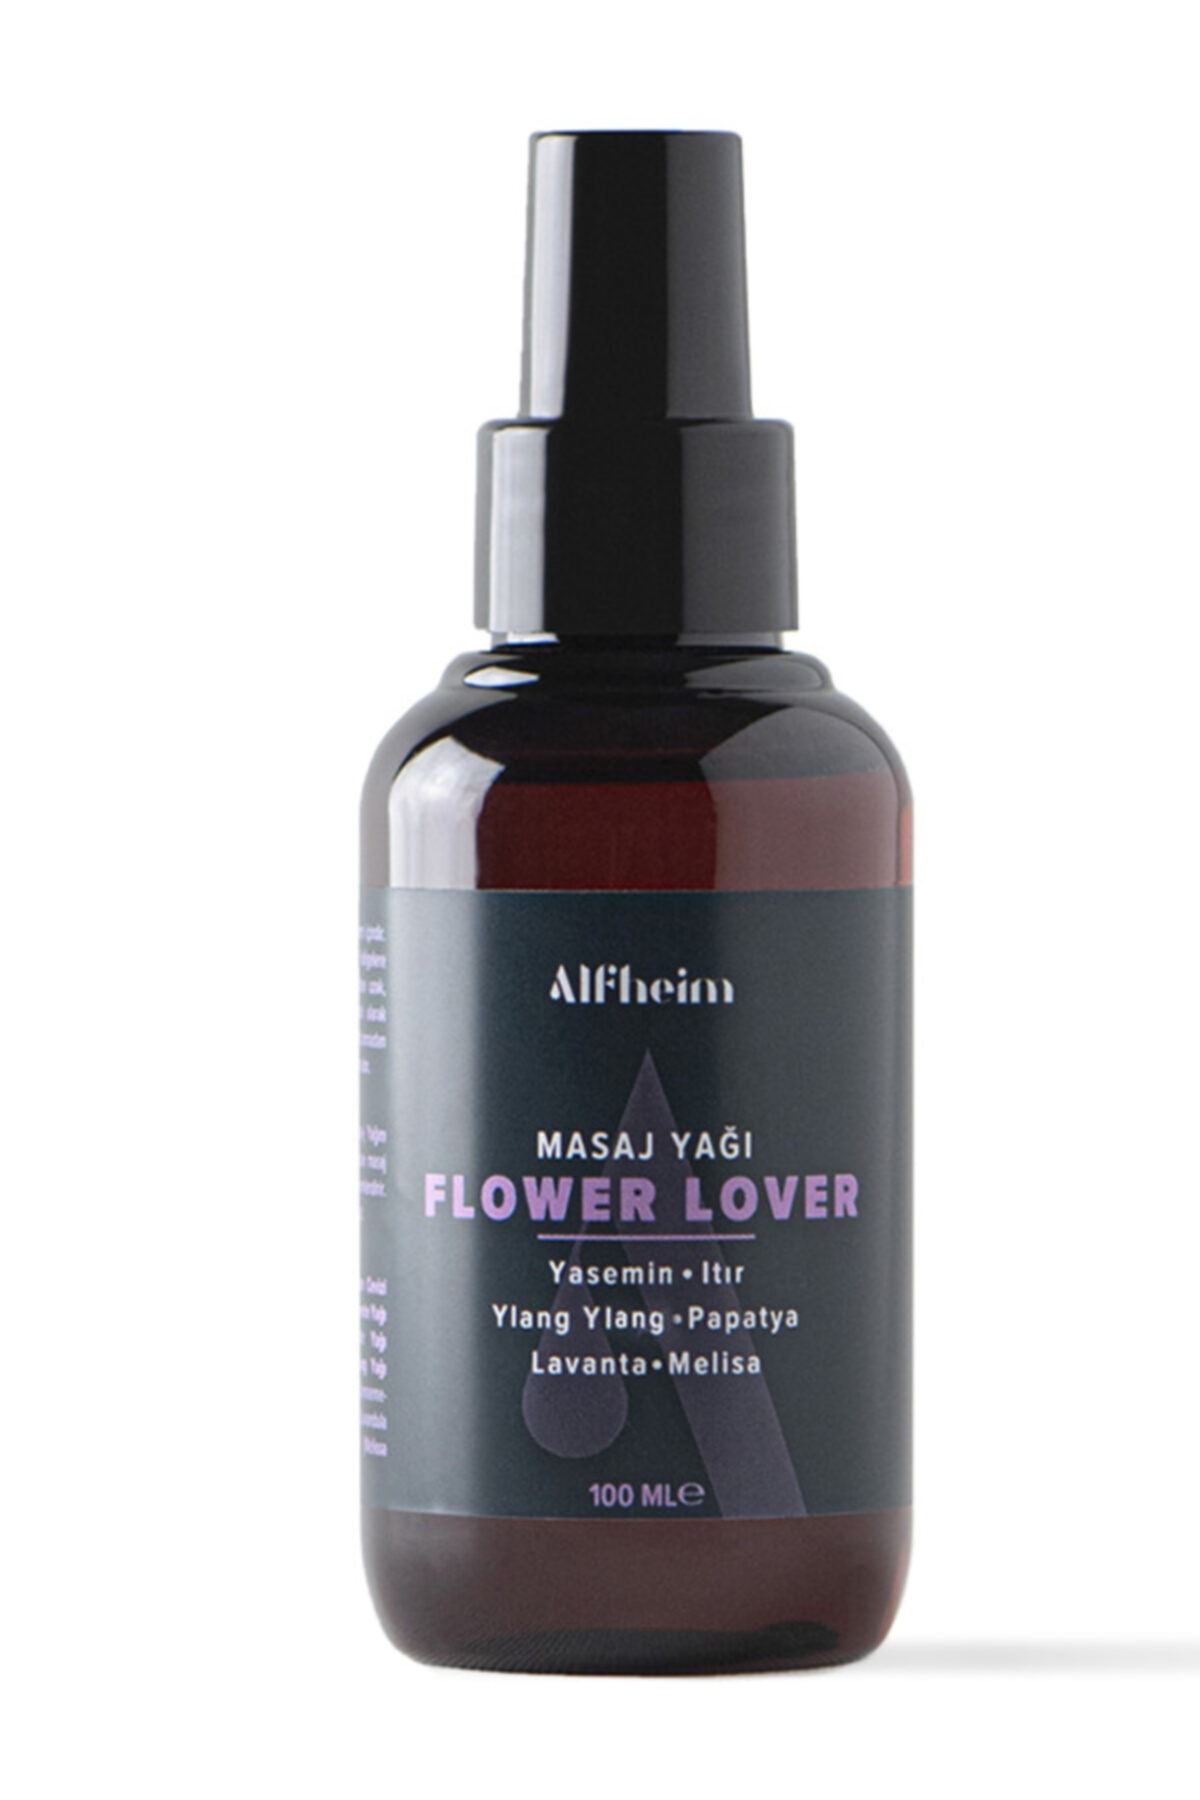 Alfheim Flower Lover Masaj Yağı/ Uçucu Yağ Karışımı/ Çiçeksi Kokular/ Gevşetici Masaj Yağı/ 100 Ml